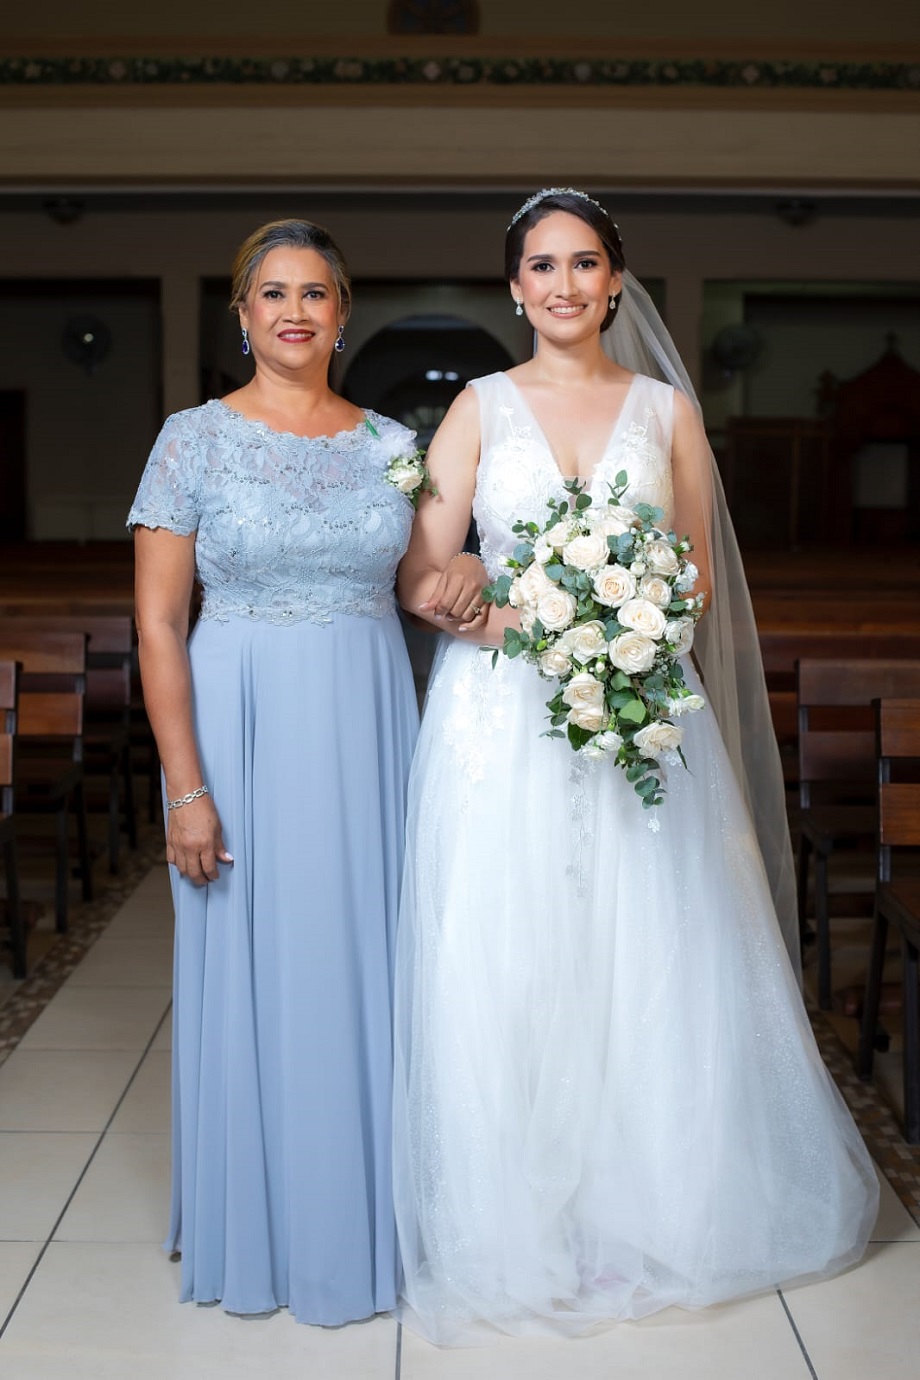 La boda de Pablo Sorto y Kayleen Damaris Fernández… de esencia clásica chic